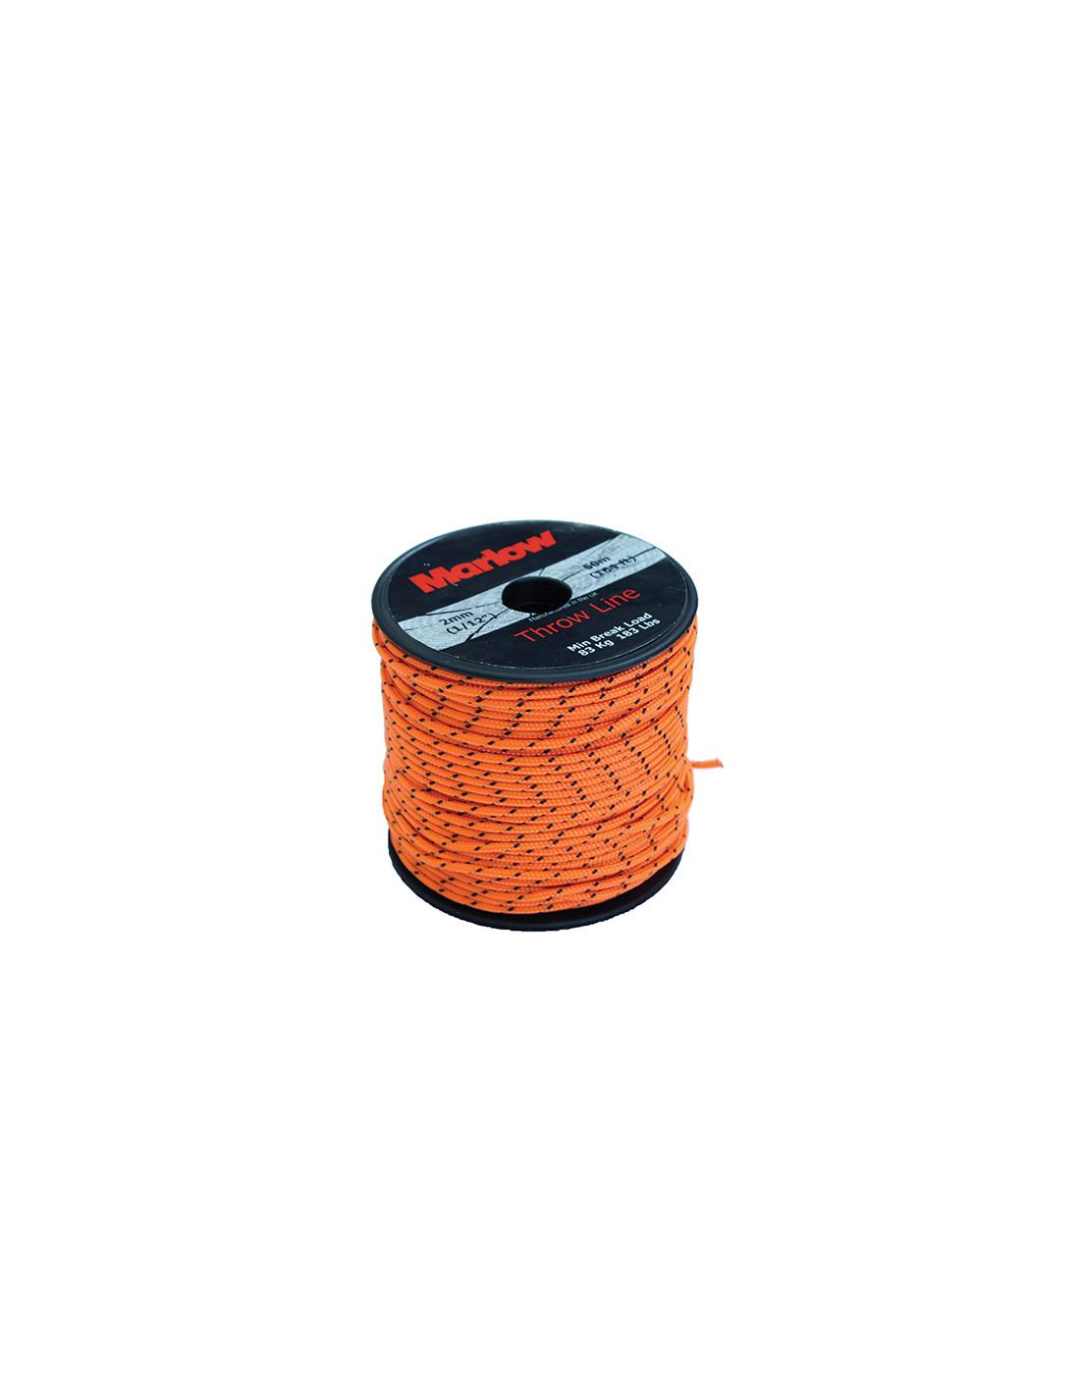 cuerda EXCEL THROWLINE MARLOW Naranja de 50 metros y 2 mm de diámetro